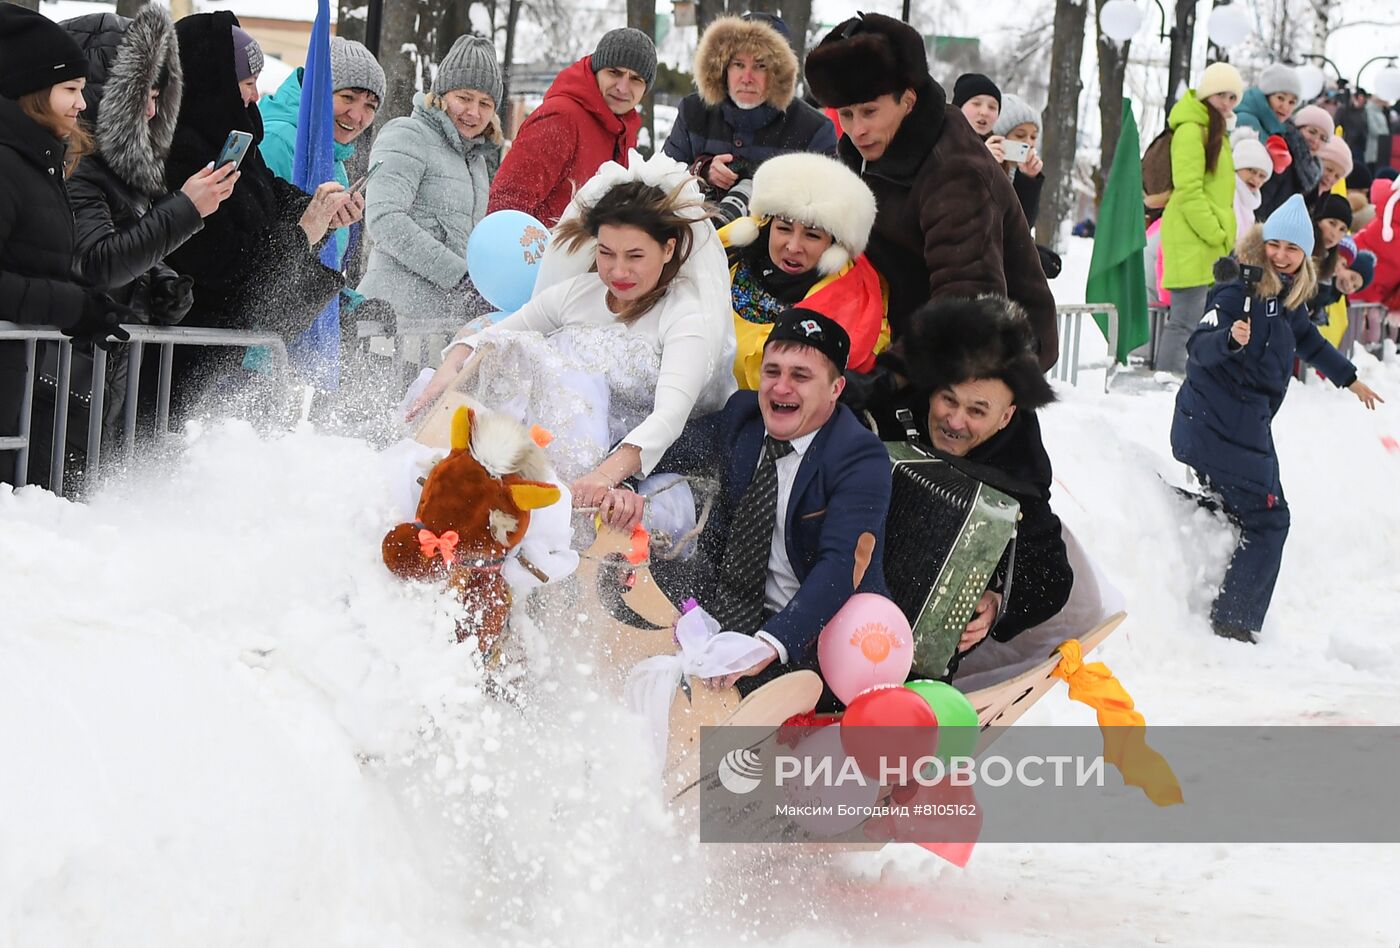 Фестиваль креативных санок в Татарстане